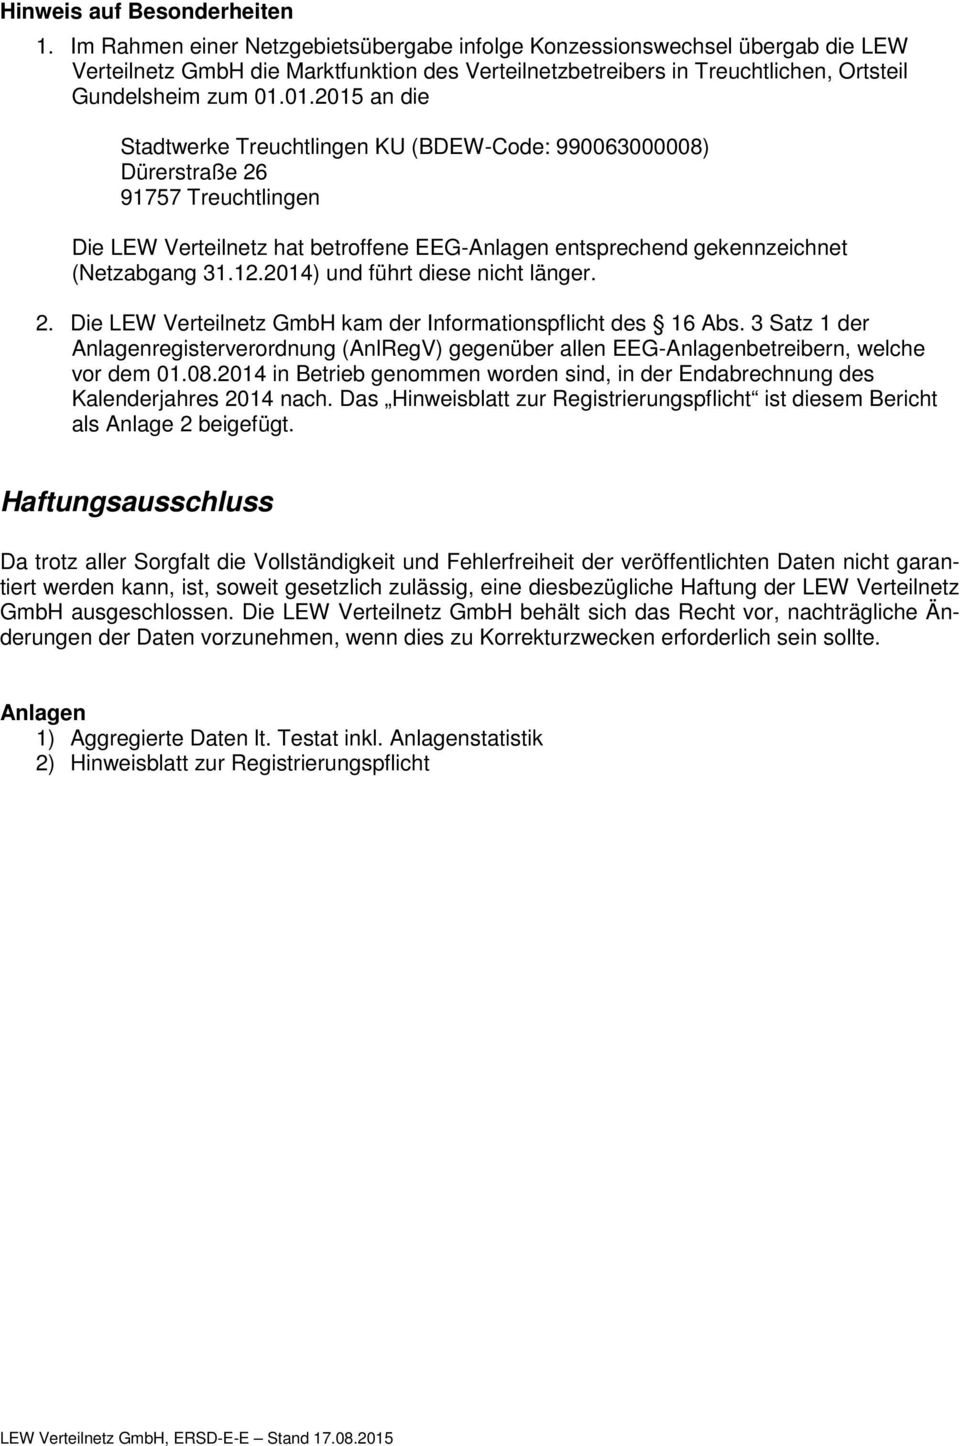 01.2015 an die Stadtwerke Treuchtlingen KU (BDEW-Code: 990063000008) Dürerstraße 26 91757 Treuchtlingen Die LEW Verteilnetz hat betroffene EEG-Anlagen entsprechend gekennzeichnet (Netzabgang 31.12.